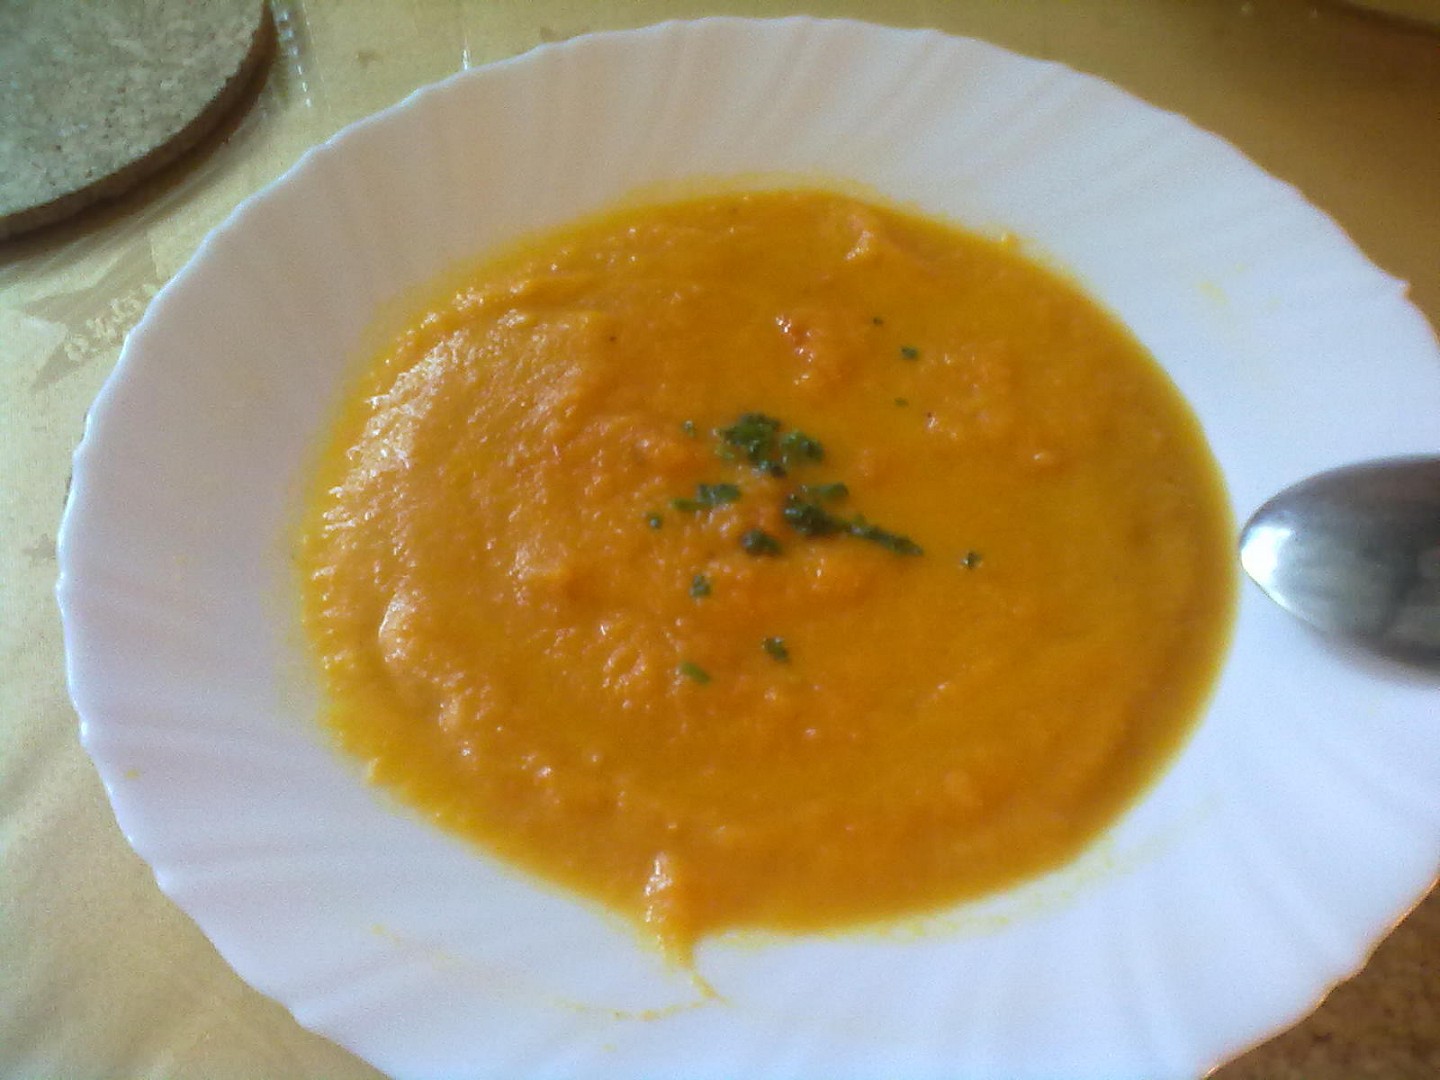 Krémová mrkvová polévka se zázvorem